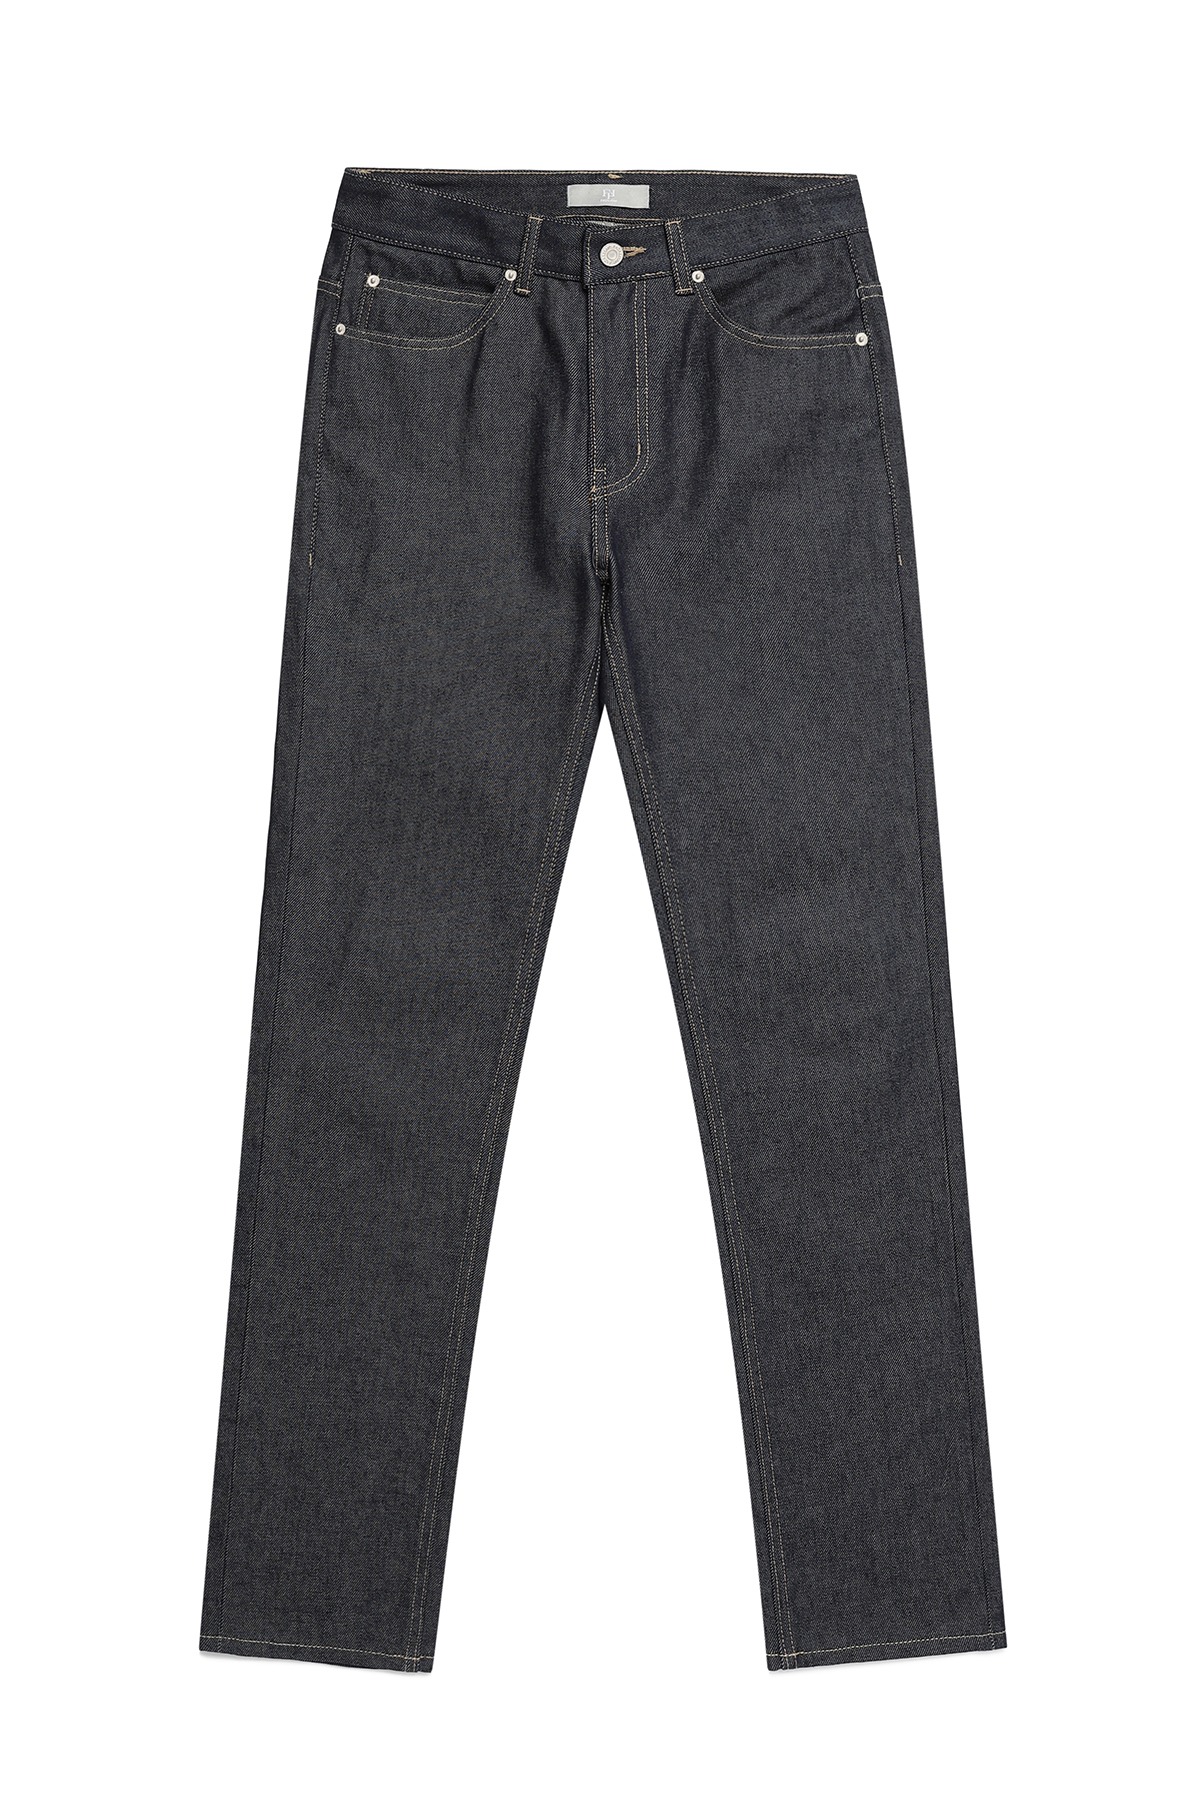 #0332 Raw standard jeans